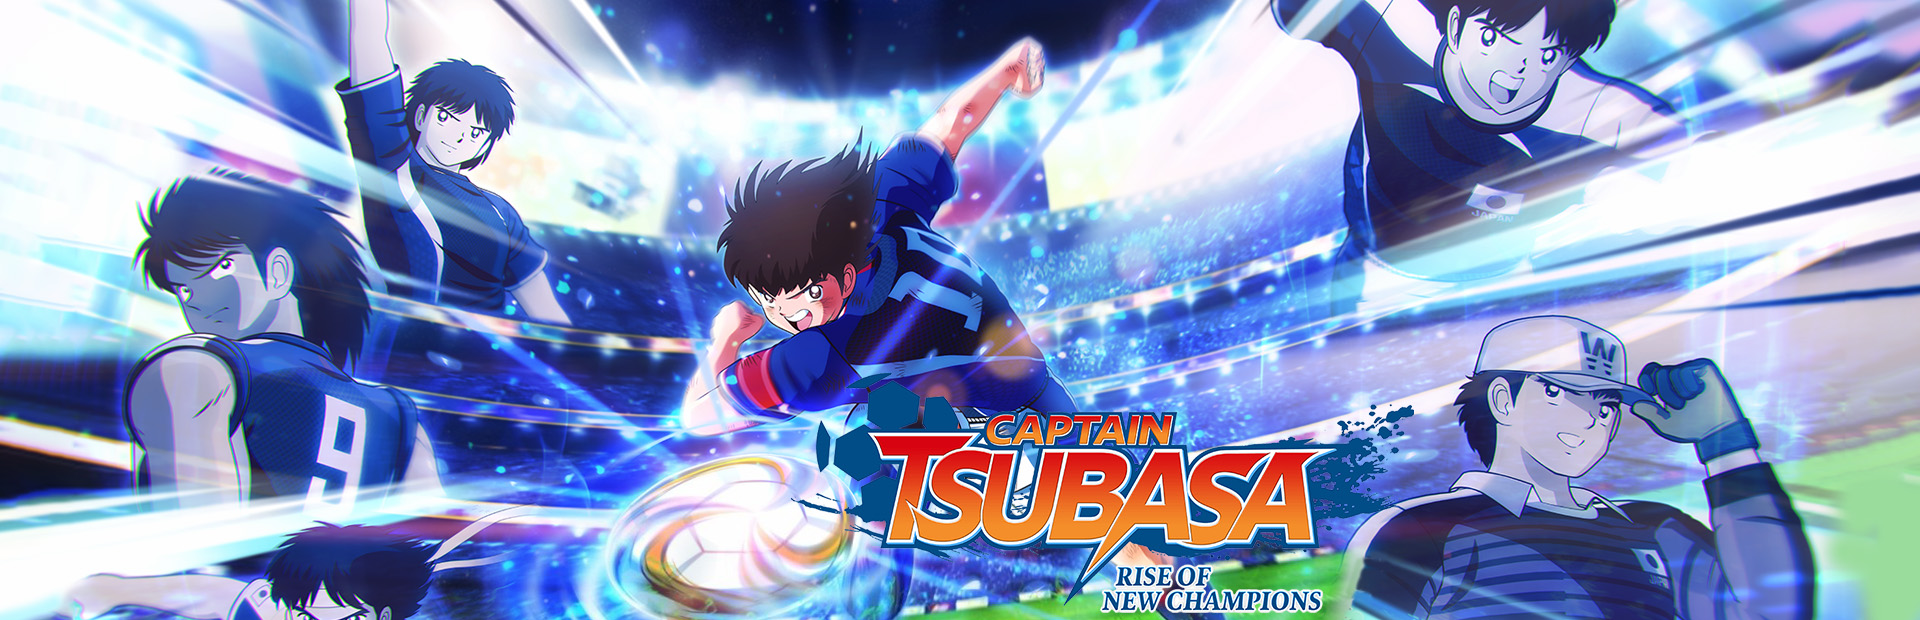 دانلود بازی Captain Tsubasa: Rise of New Champions برای PC | گیمباتو